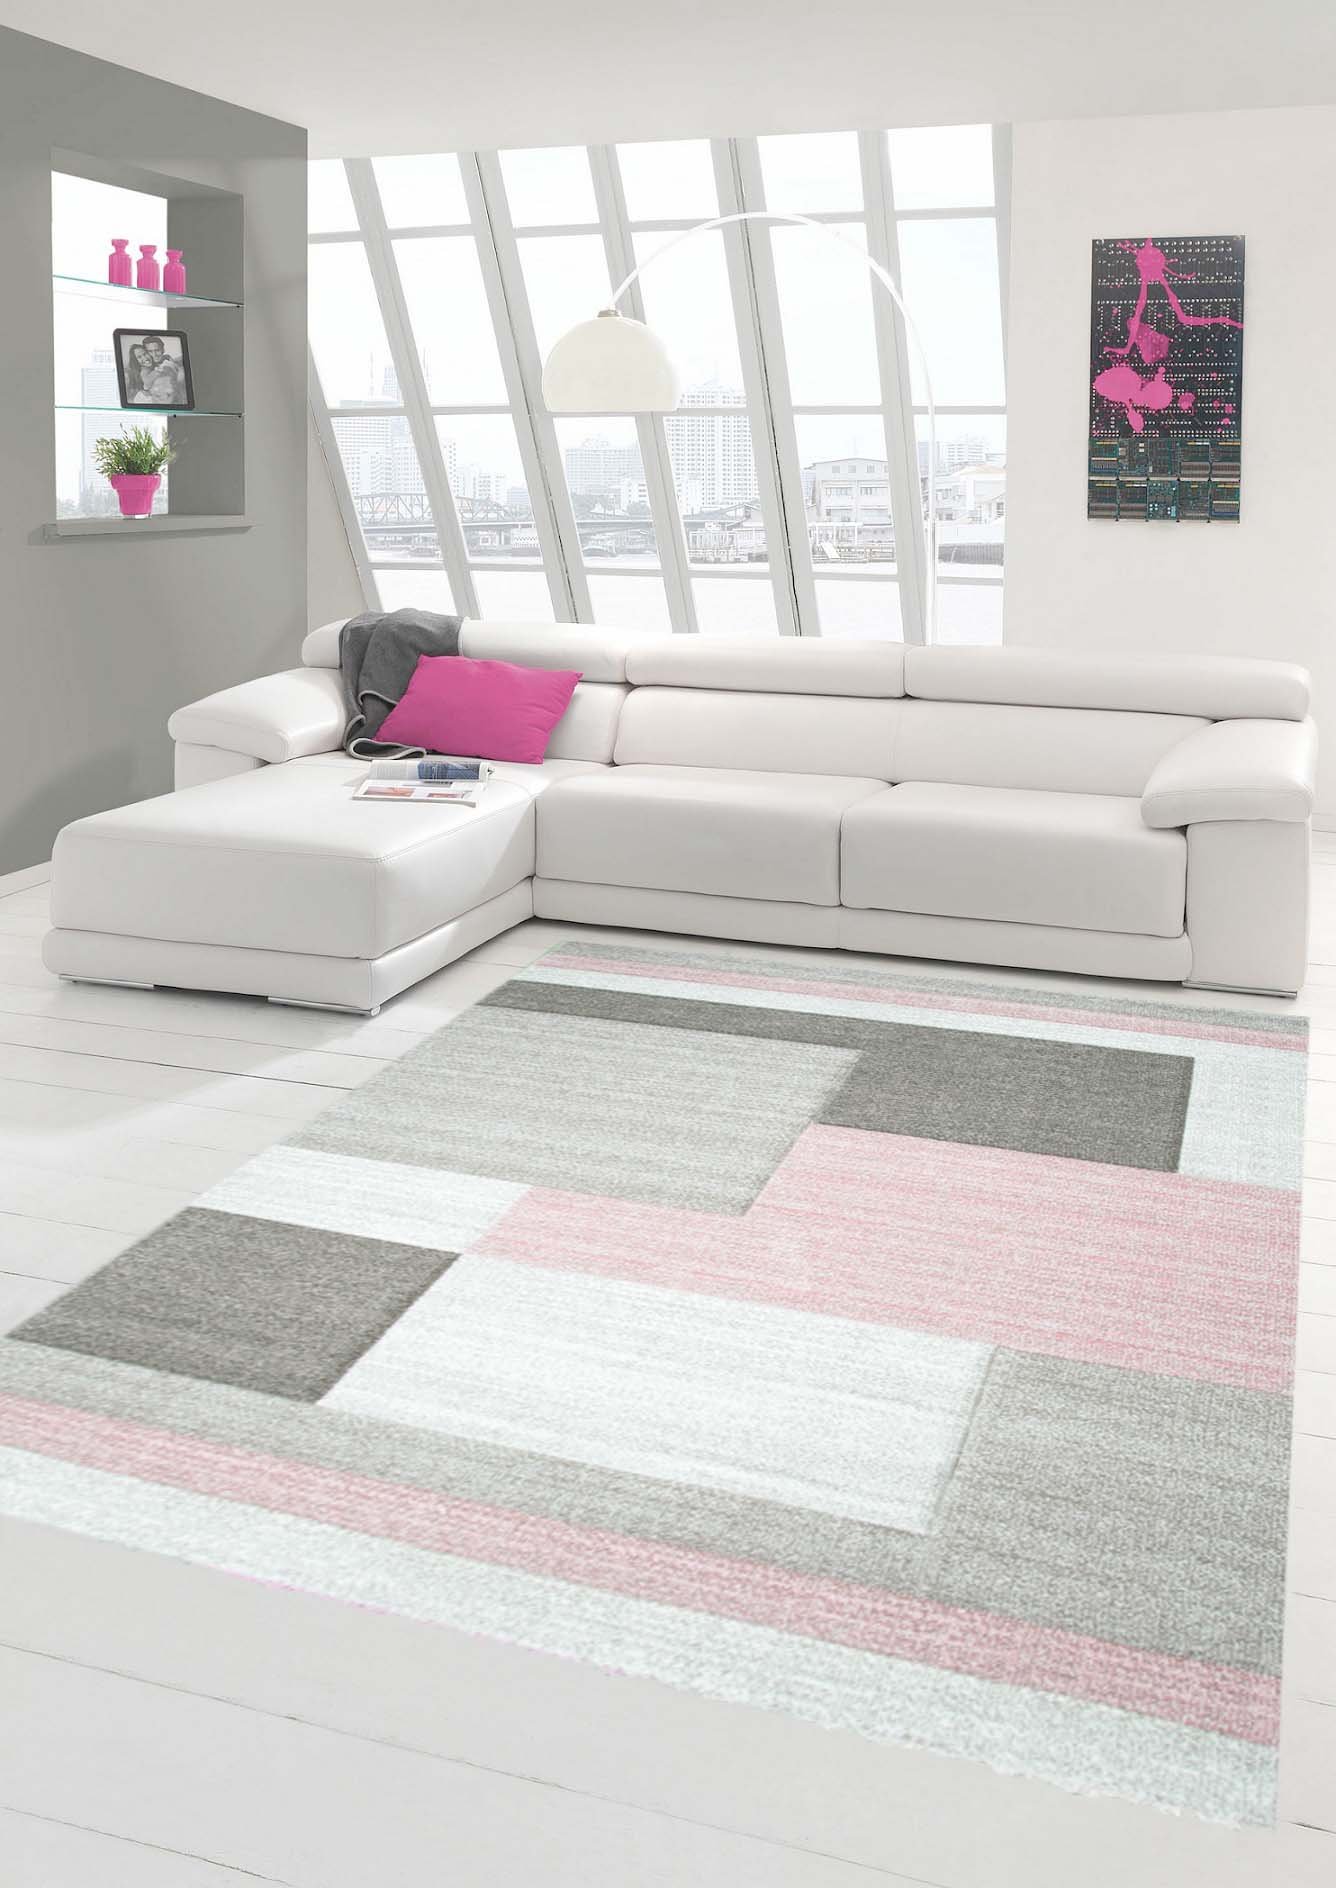 Traum Teppich Designerteppich Moderner Teppich Wohnzimmerteppich Kurzflor Teppich mit Konturenschnitt Karo Muster Pastellfarben Rosa Beige, Größe 240x340 cm